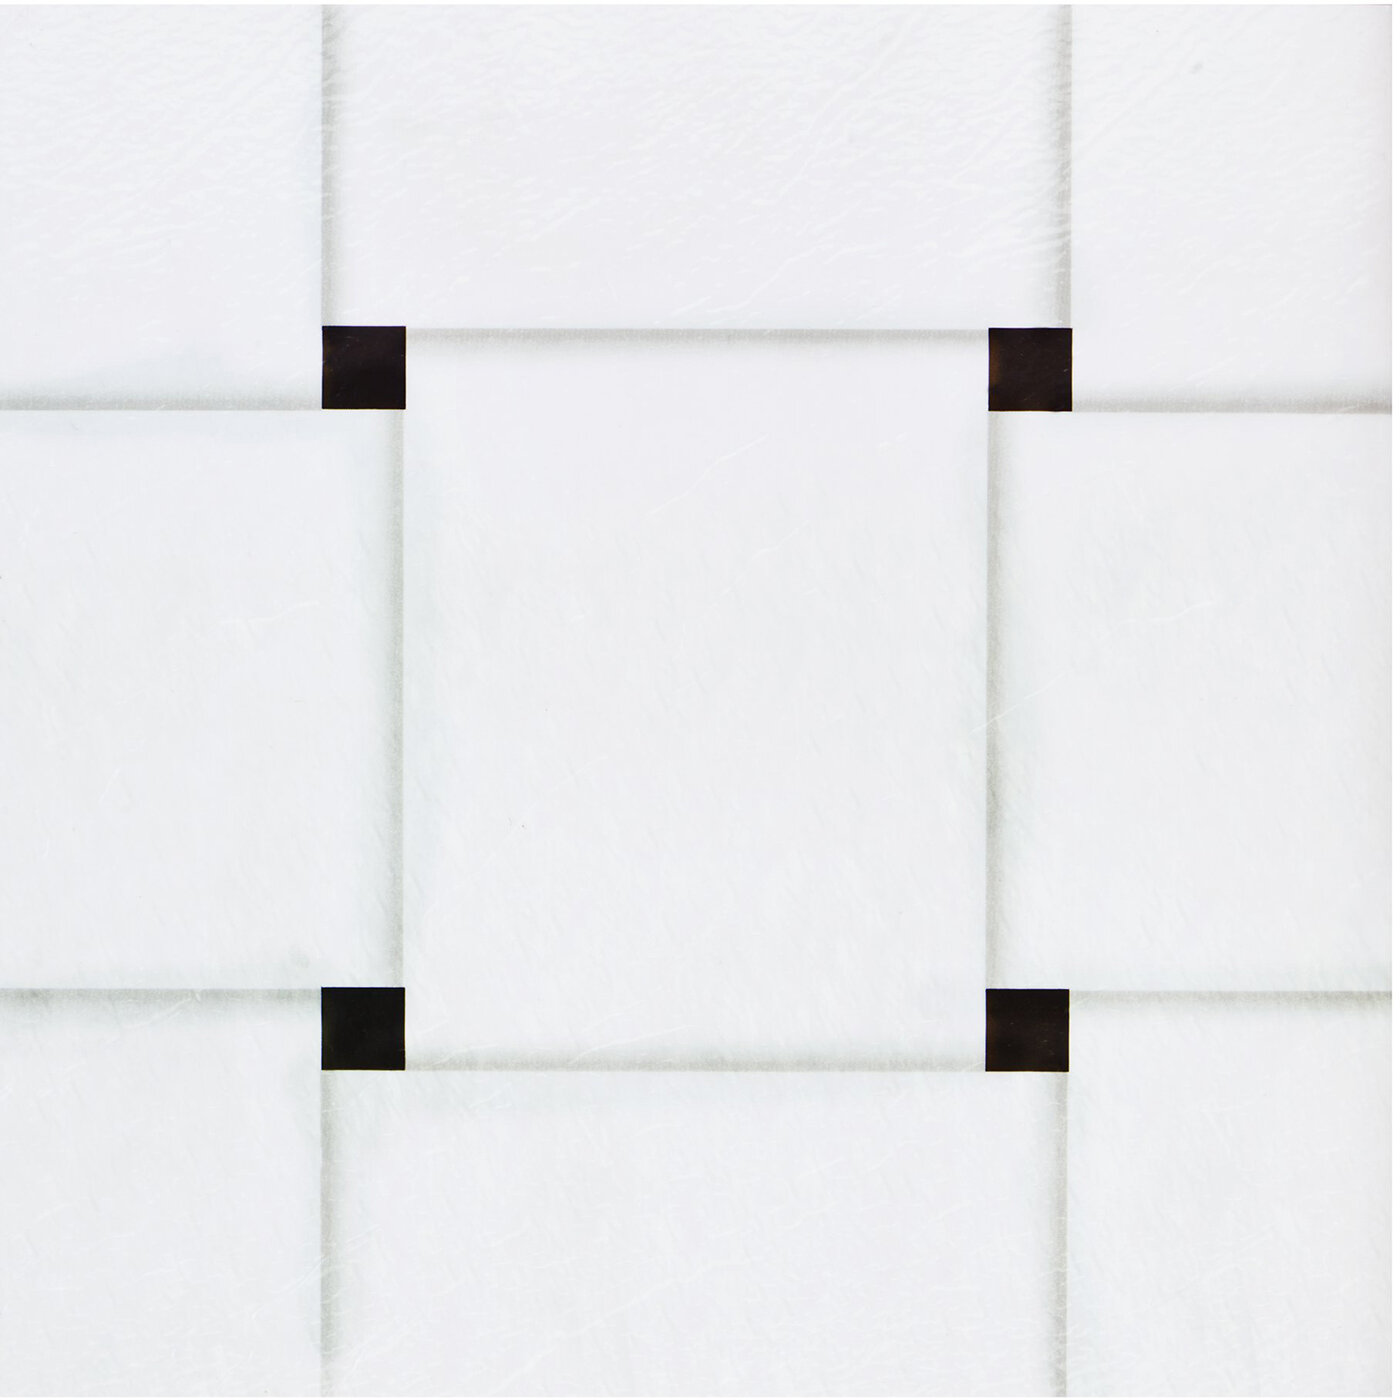 Waterproof Lvt Vinyl Tiles Flooring Marble Design Texture Size